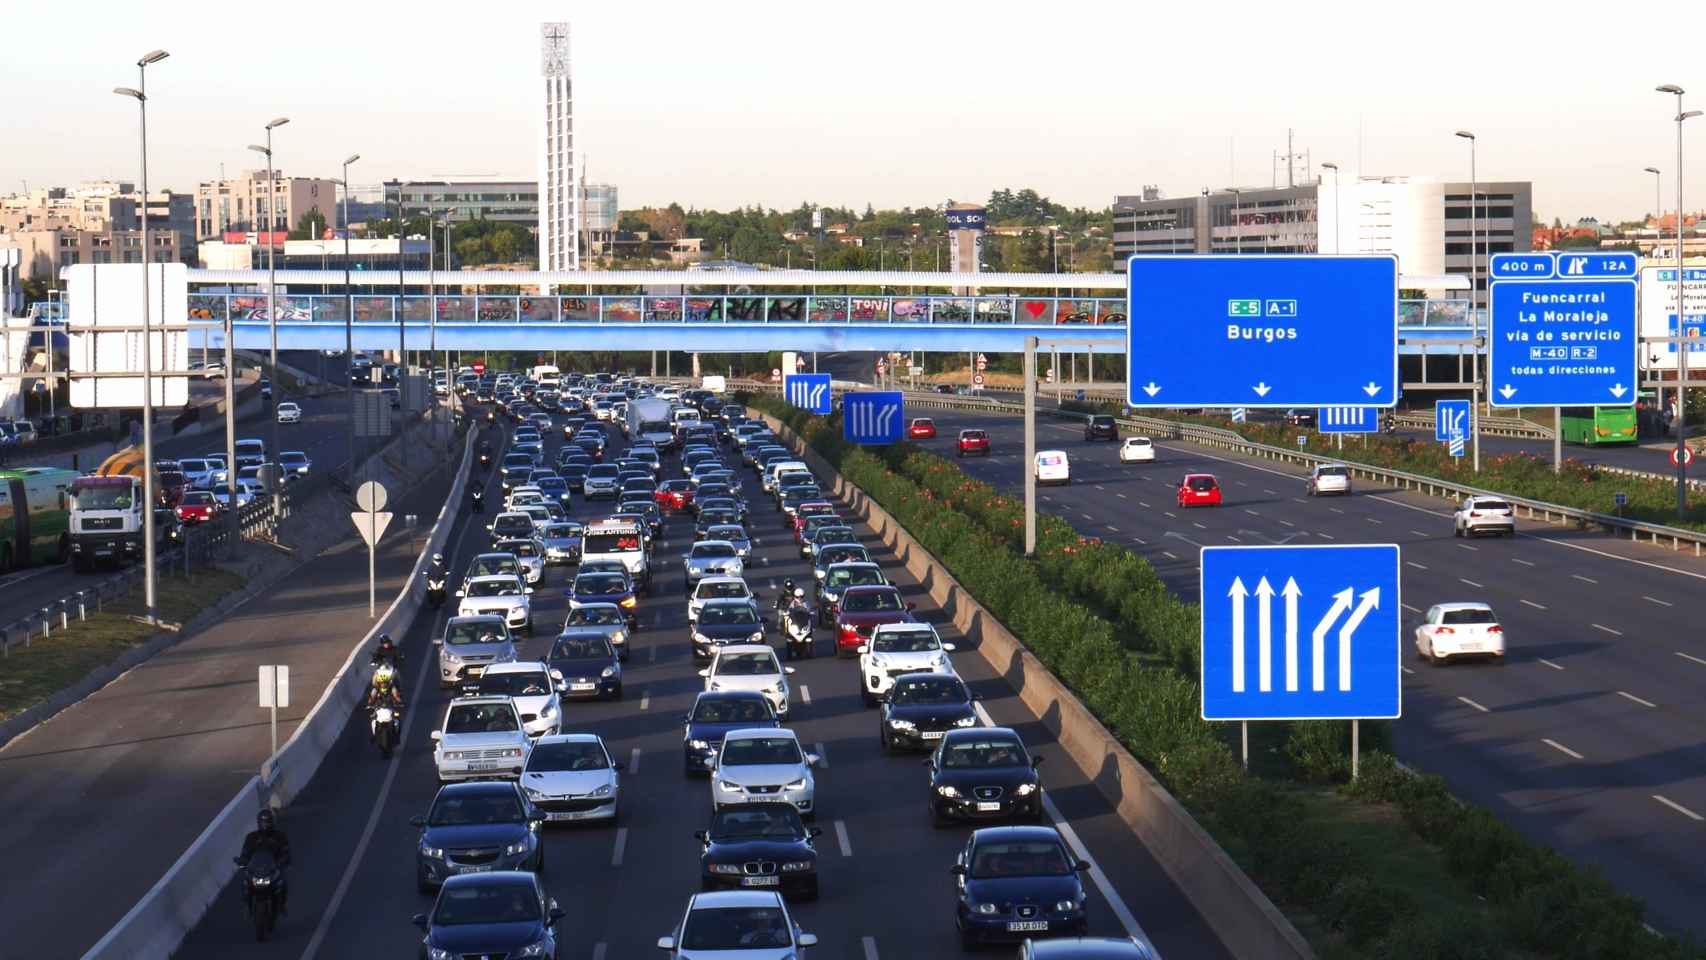 ¿Cuál es el municipio que tendrá más restricciones de coches? No se trata de Madrid capital.